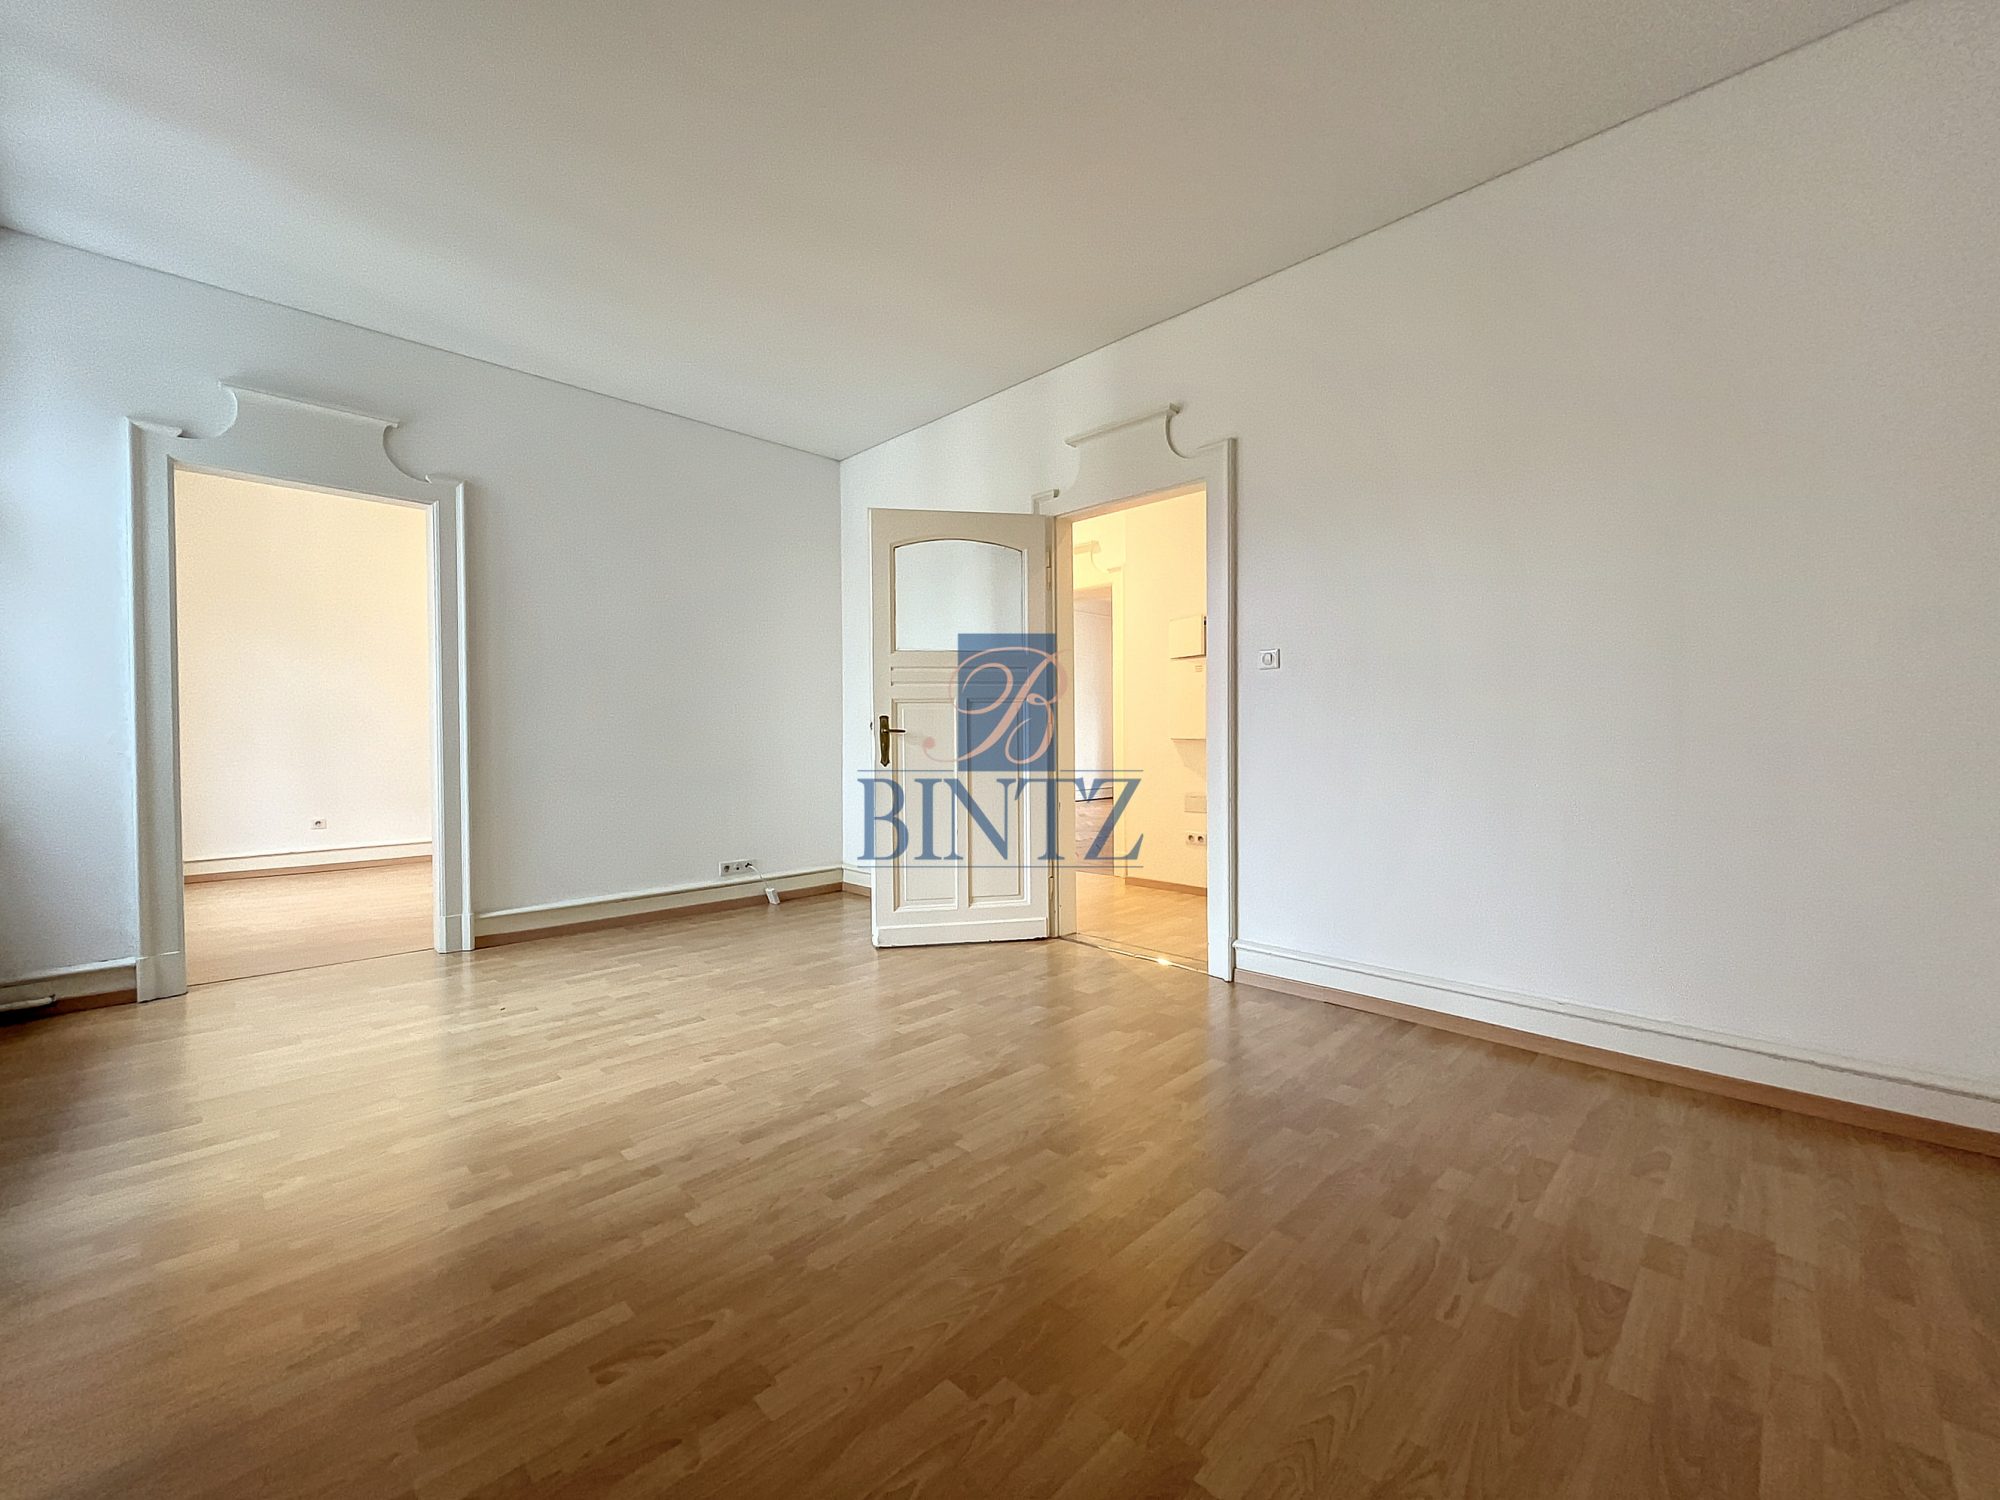 Exceptionnel 5 pièces avec balcon - location appartement Strasbourg - Bintz Immobilier - 13